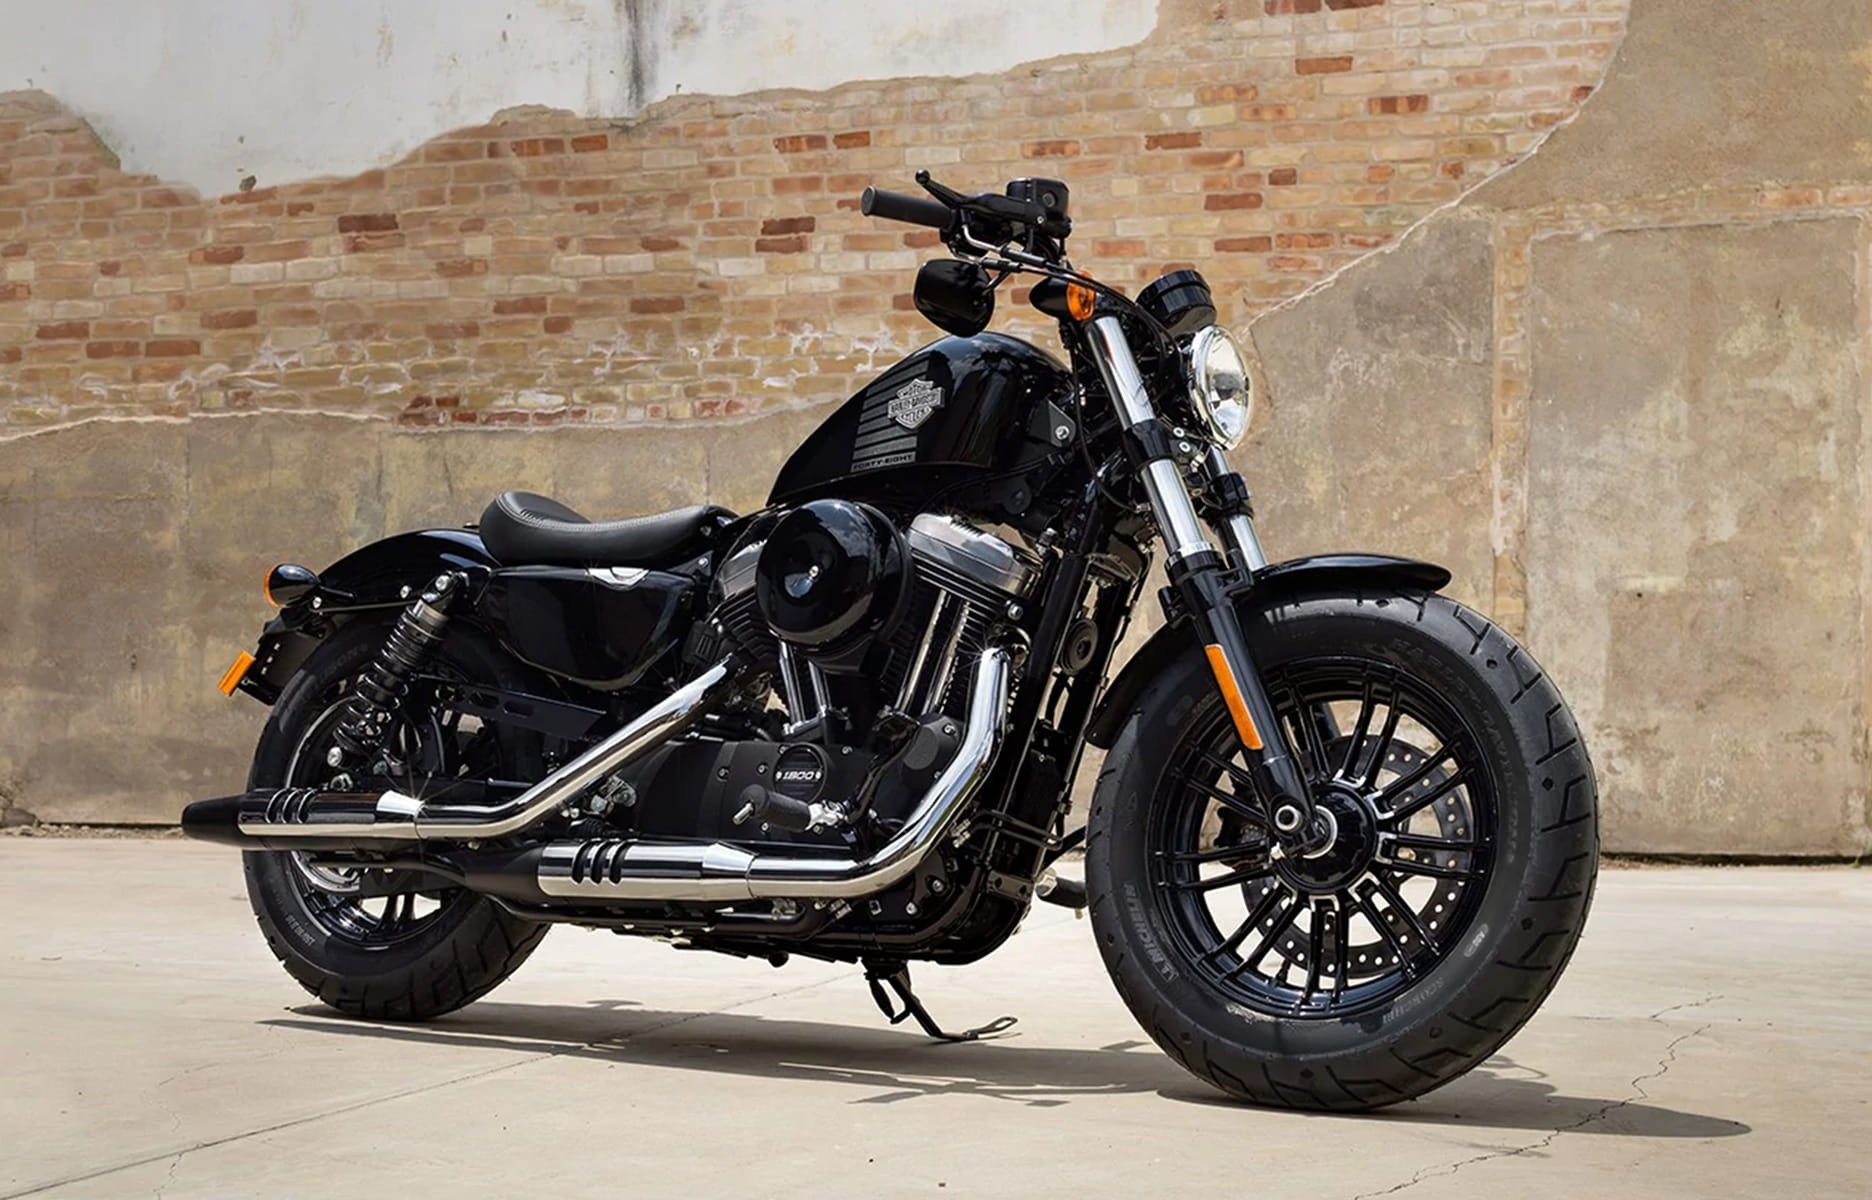 Idée cadeau - Harley-Davidson : une collection iconique